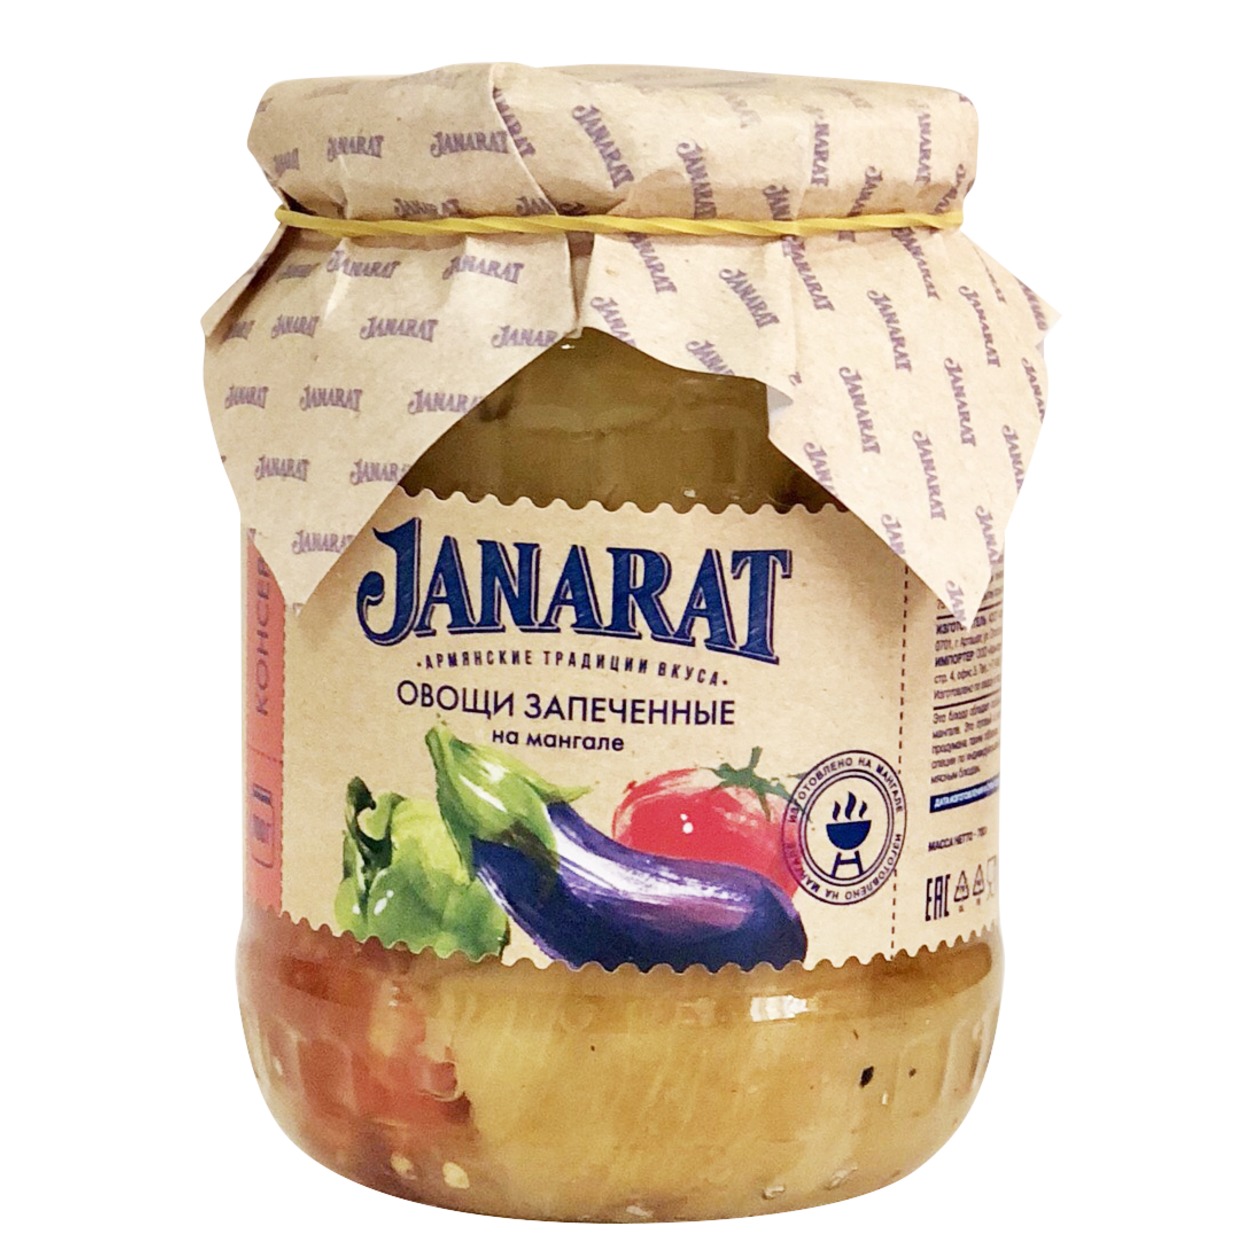 Овощи запеченные Janarat на мангале 700 г по акции в Пятерочке